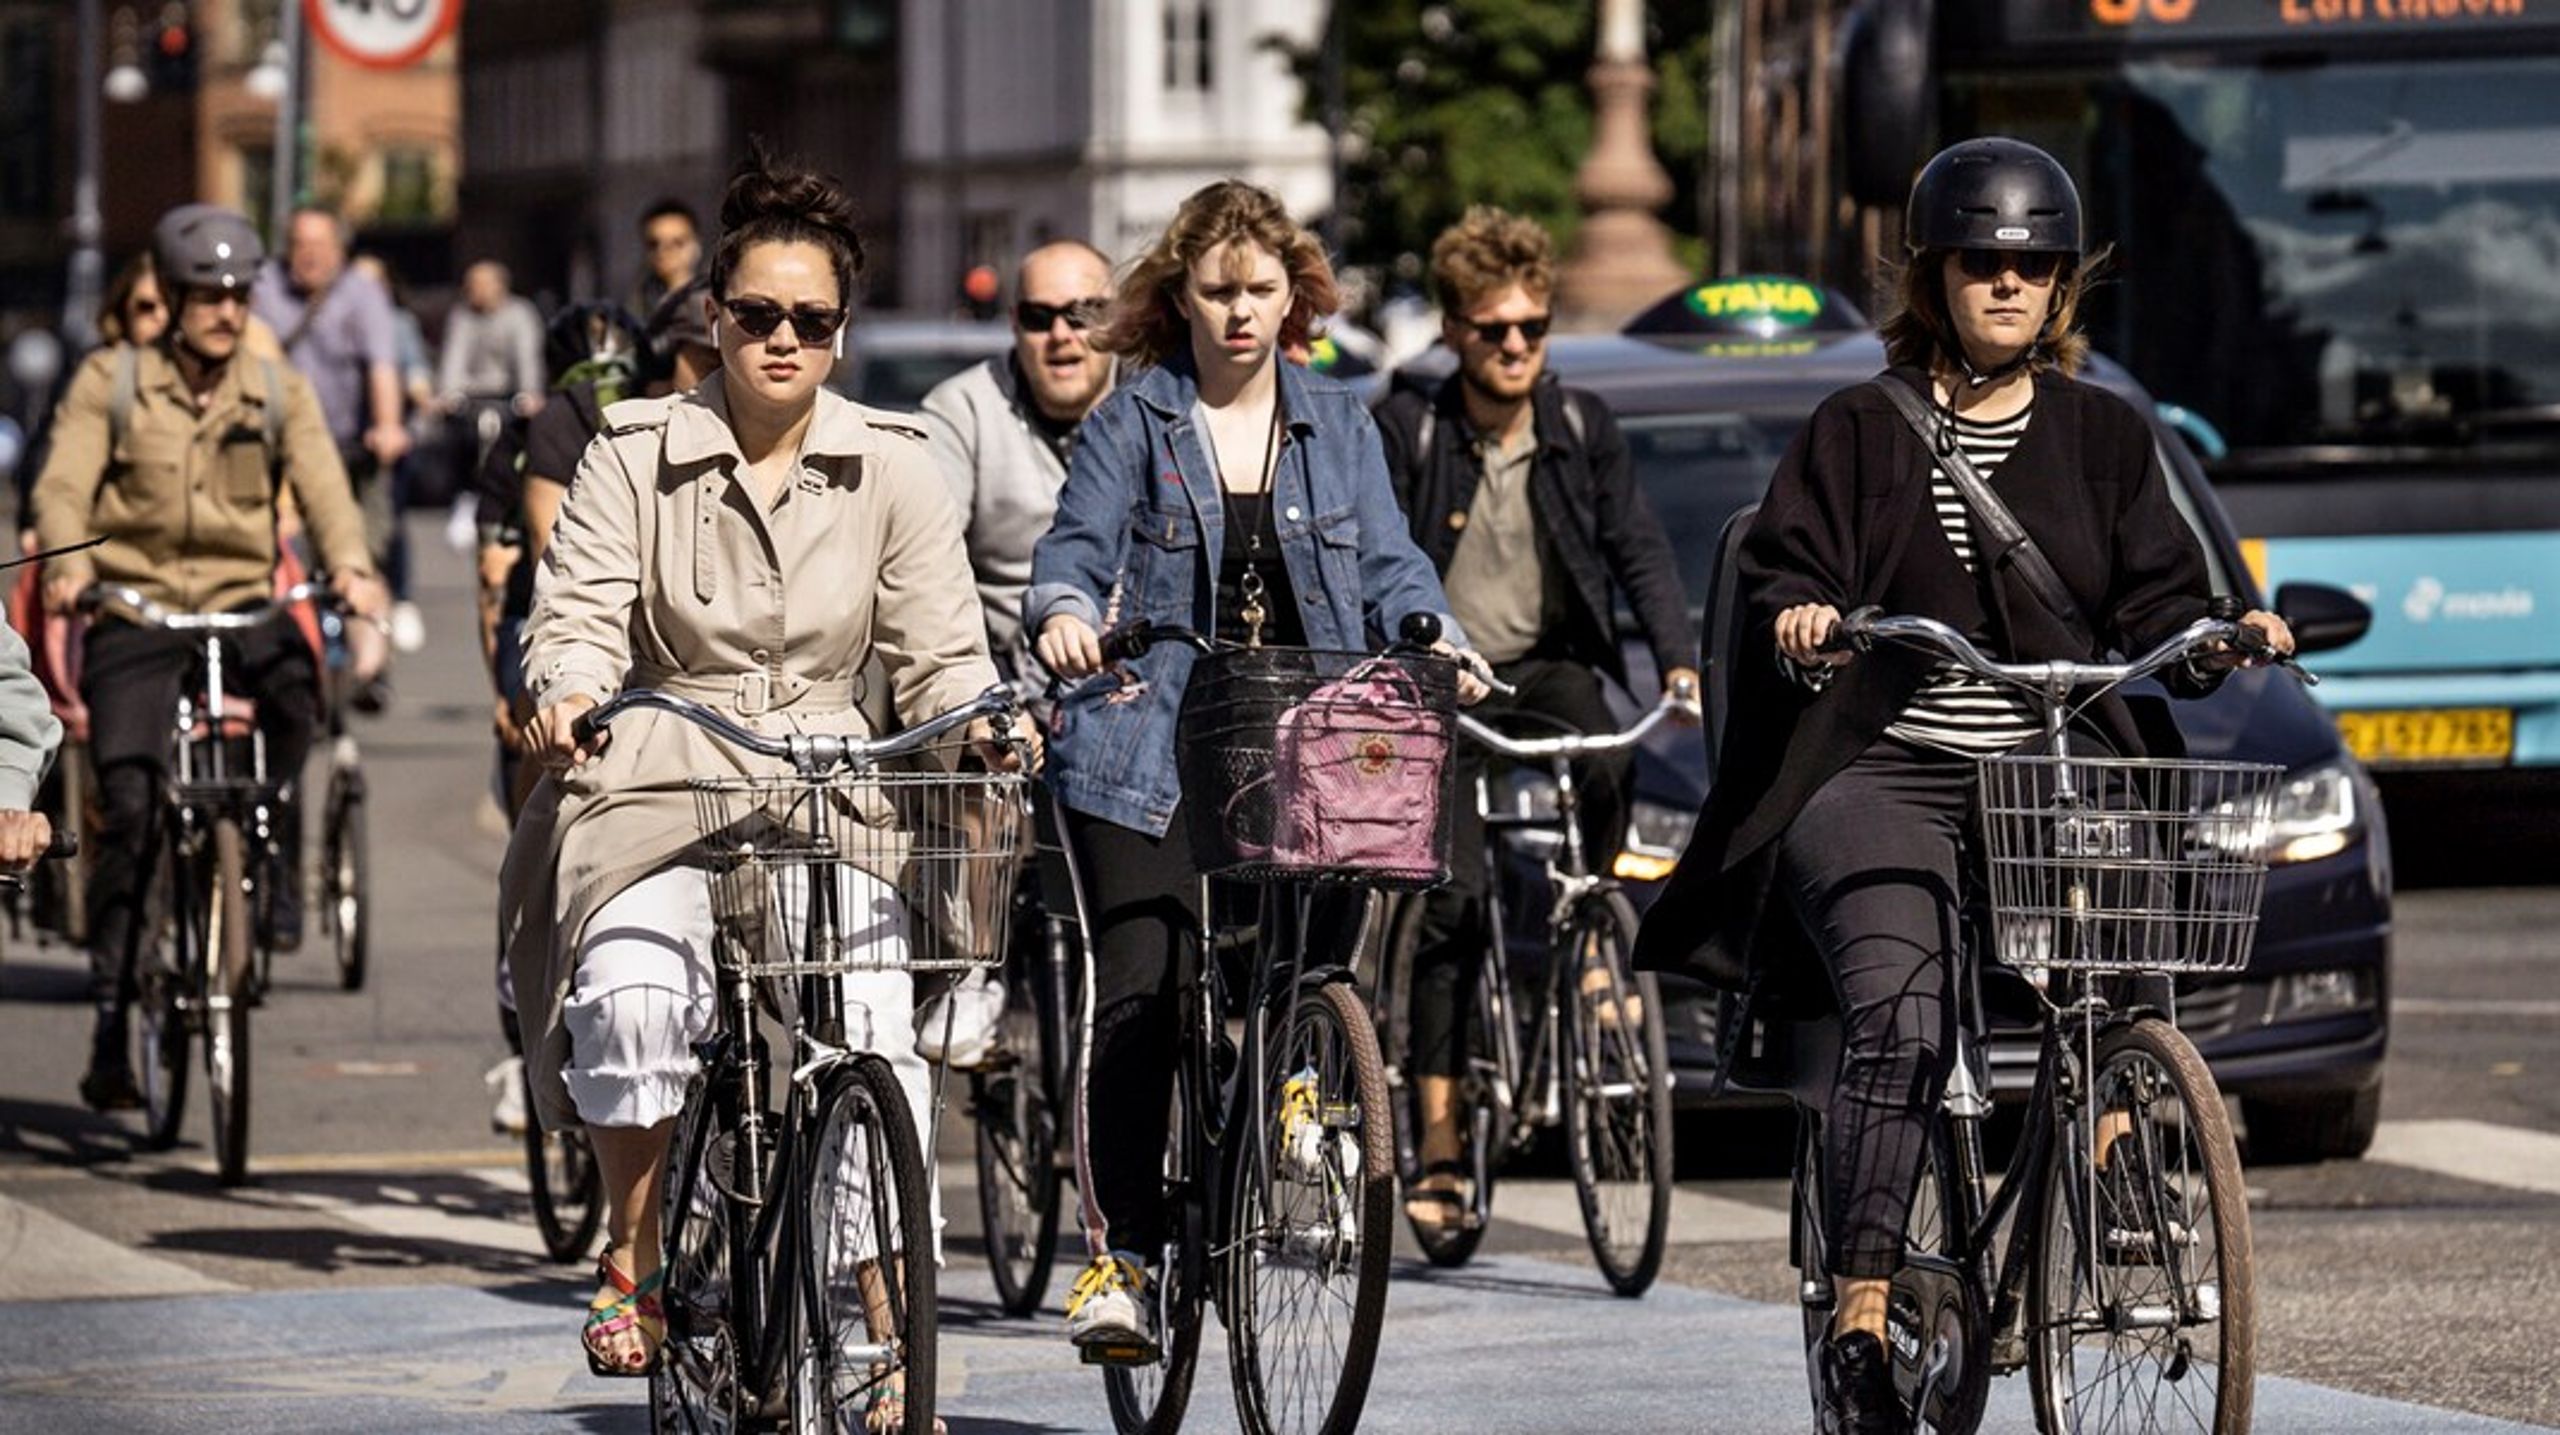 Vi må ikke undervurdere potentialet i at fremme cykling som en integreret del af vores transportsystem. Det kræver imidlertid en kollektiv indsats fra både politikere, virksomheder og borgere, skriver Jesper Kronborg, Rasmus Prehn og Kenneth Øhrberg Krag.